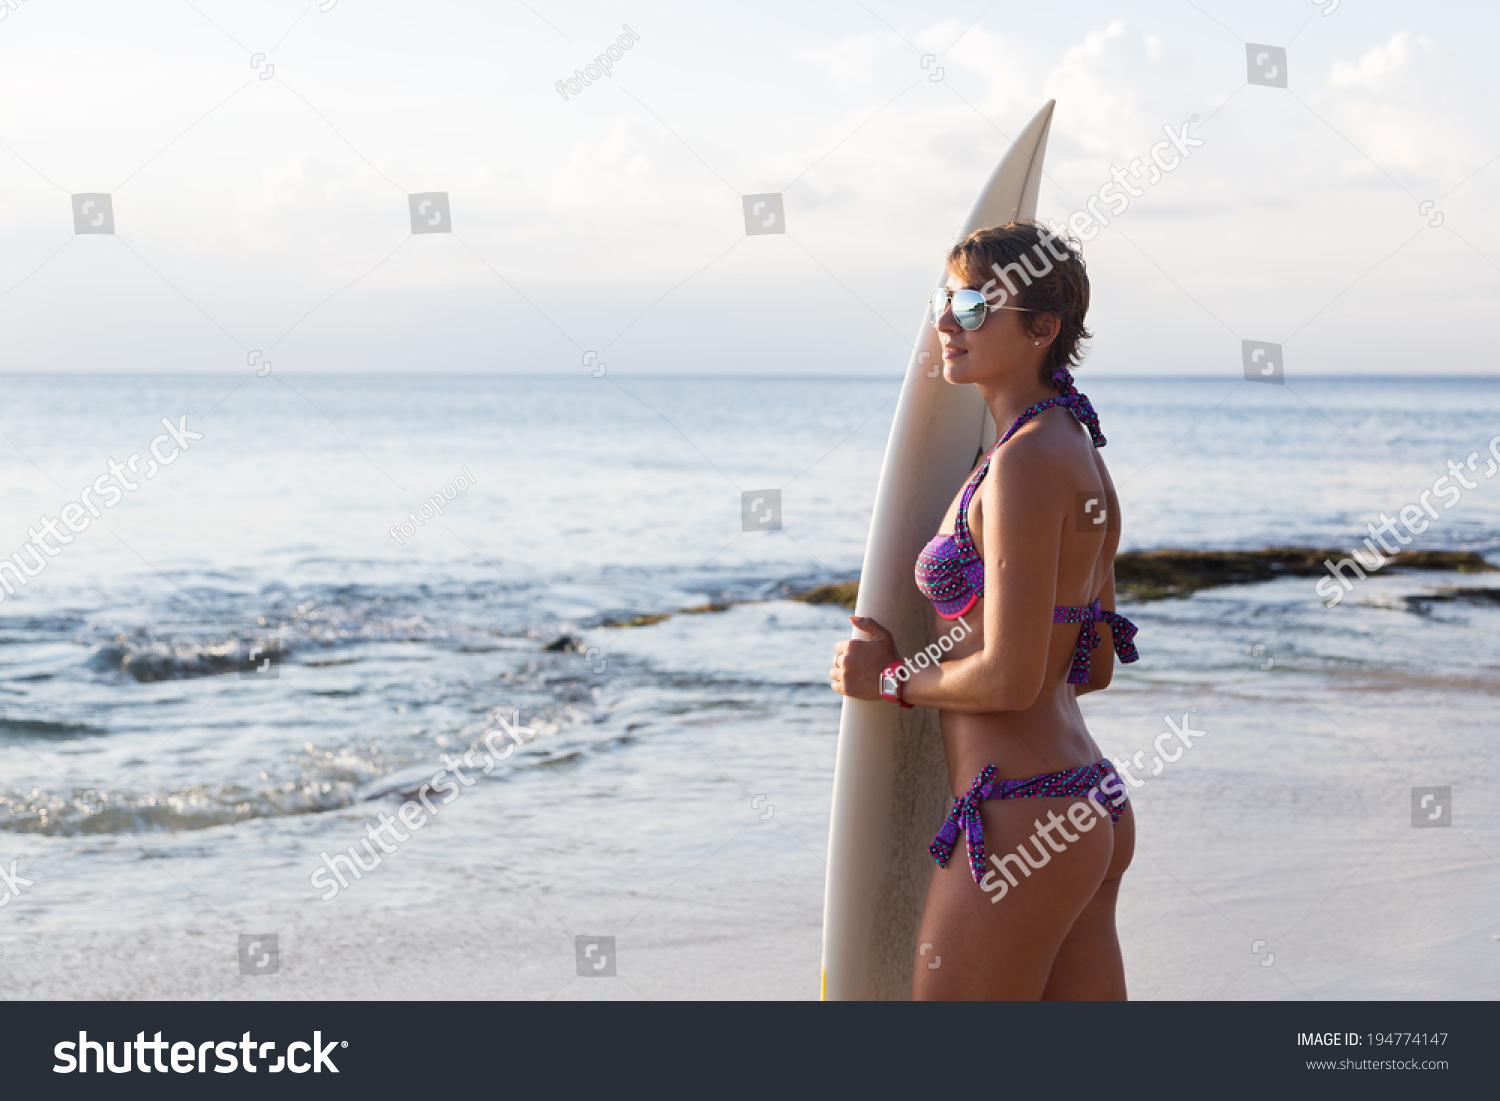 bikini models on the beach